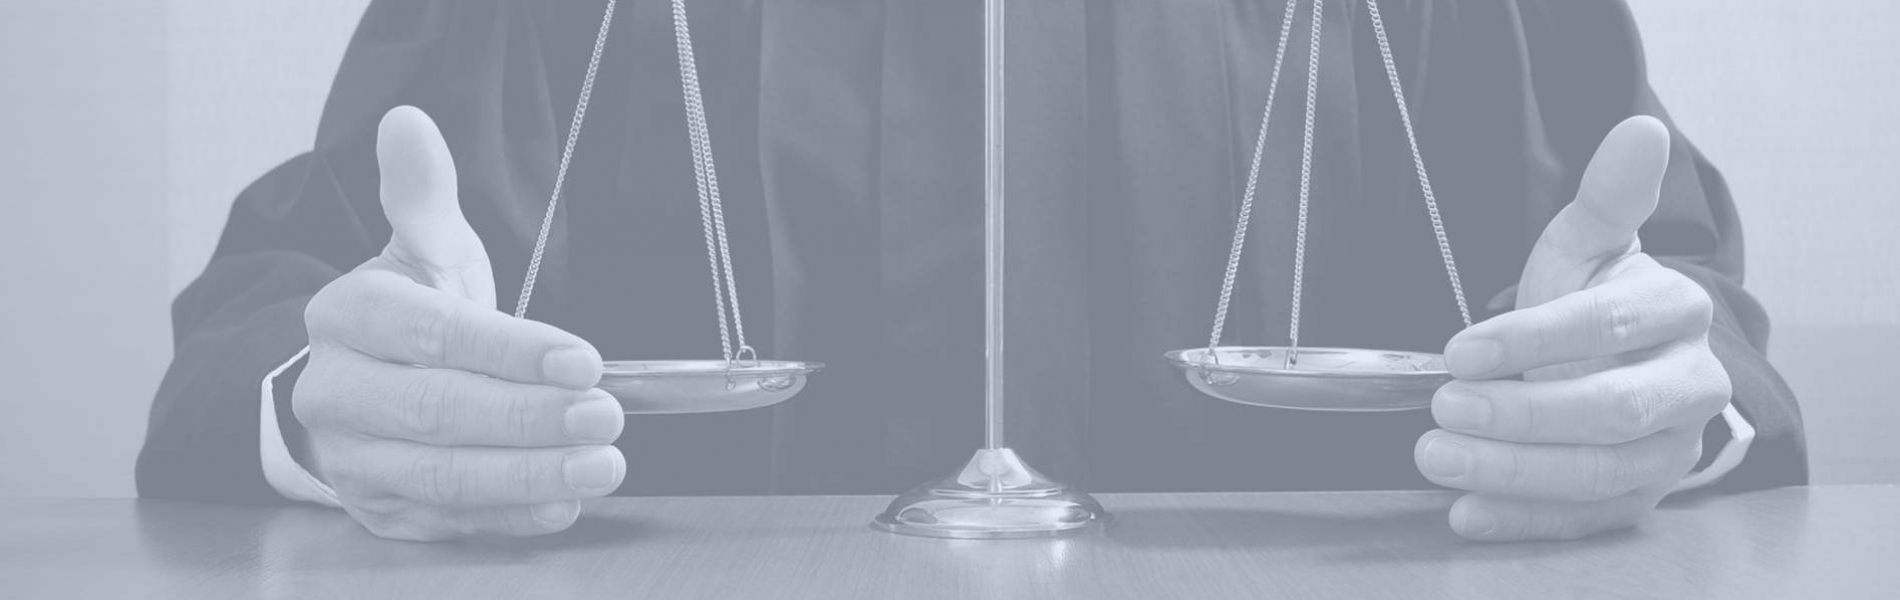 Waage im Gleichgewicht bildlich für Vertragsrecht Zivilrecht Rechtsanwalt